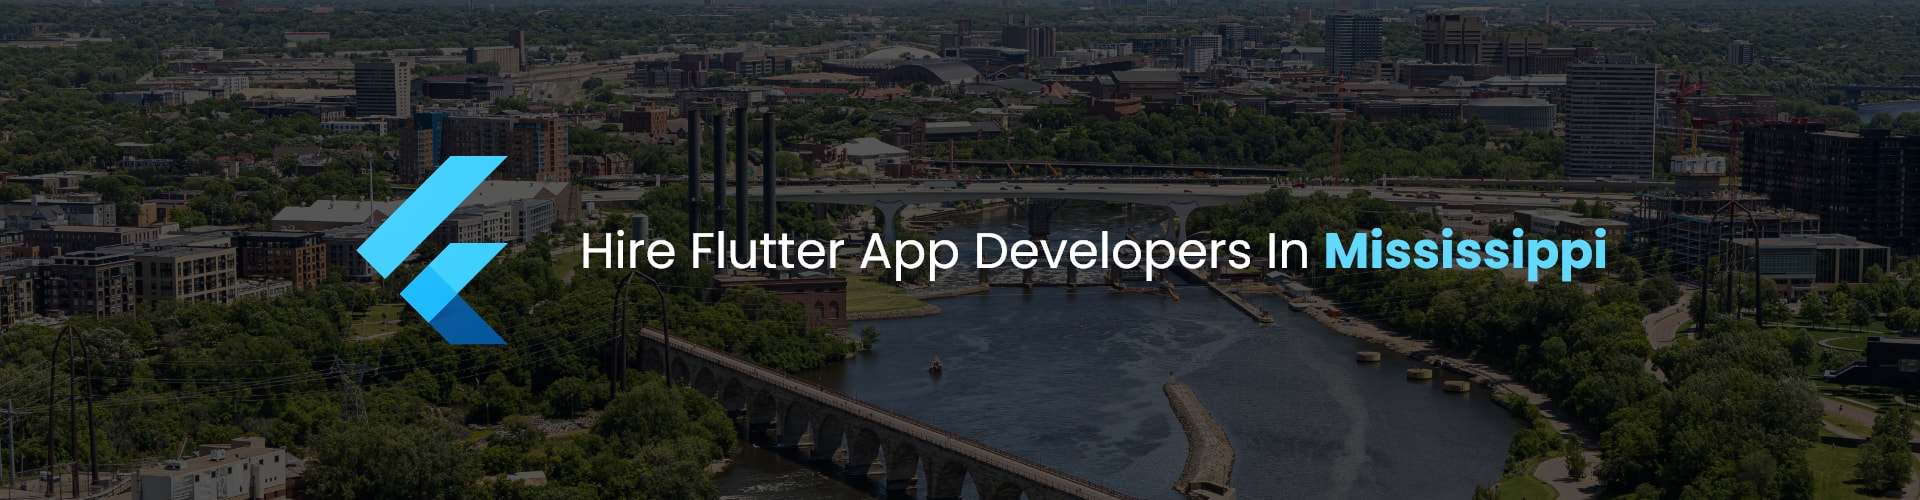 flutter app developers in mississippi